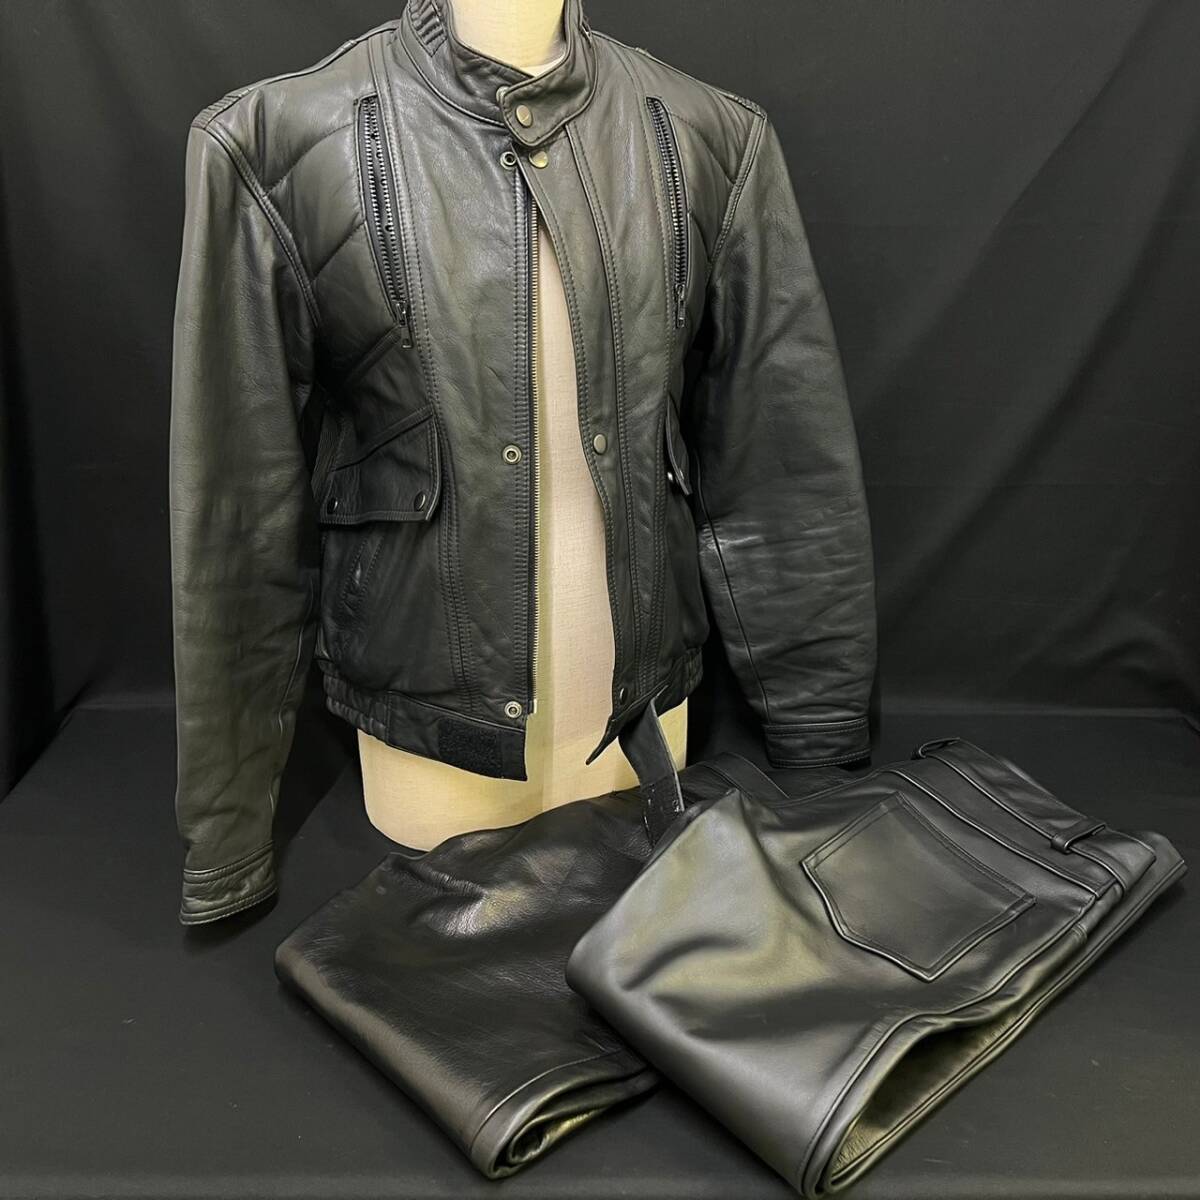 BDg298I 100 leather jacket pants summarize cow leather jacket size L pants OHPLAN/ou plan size L/DISCO size 82 Rider's black 